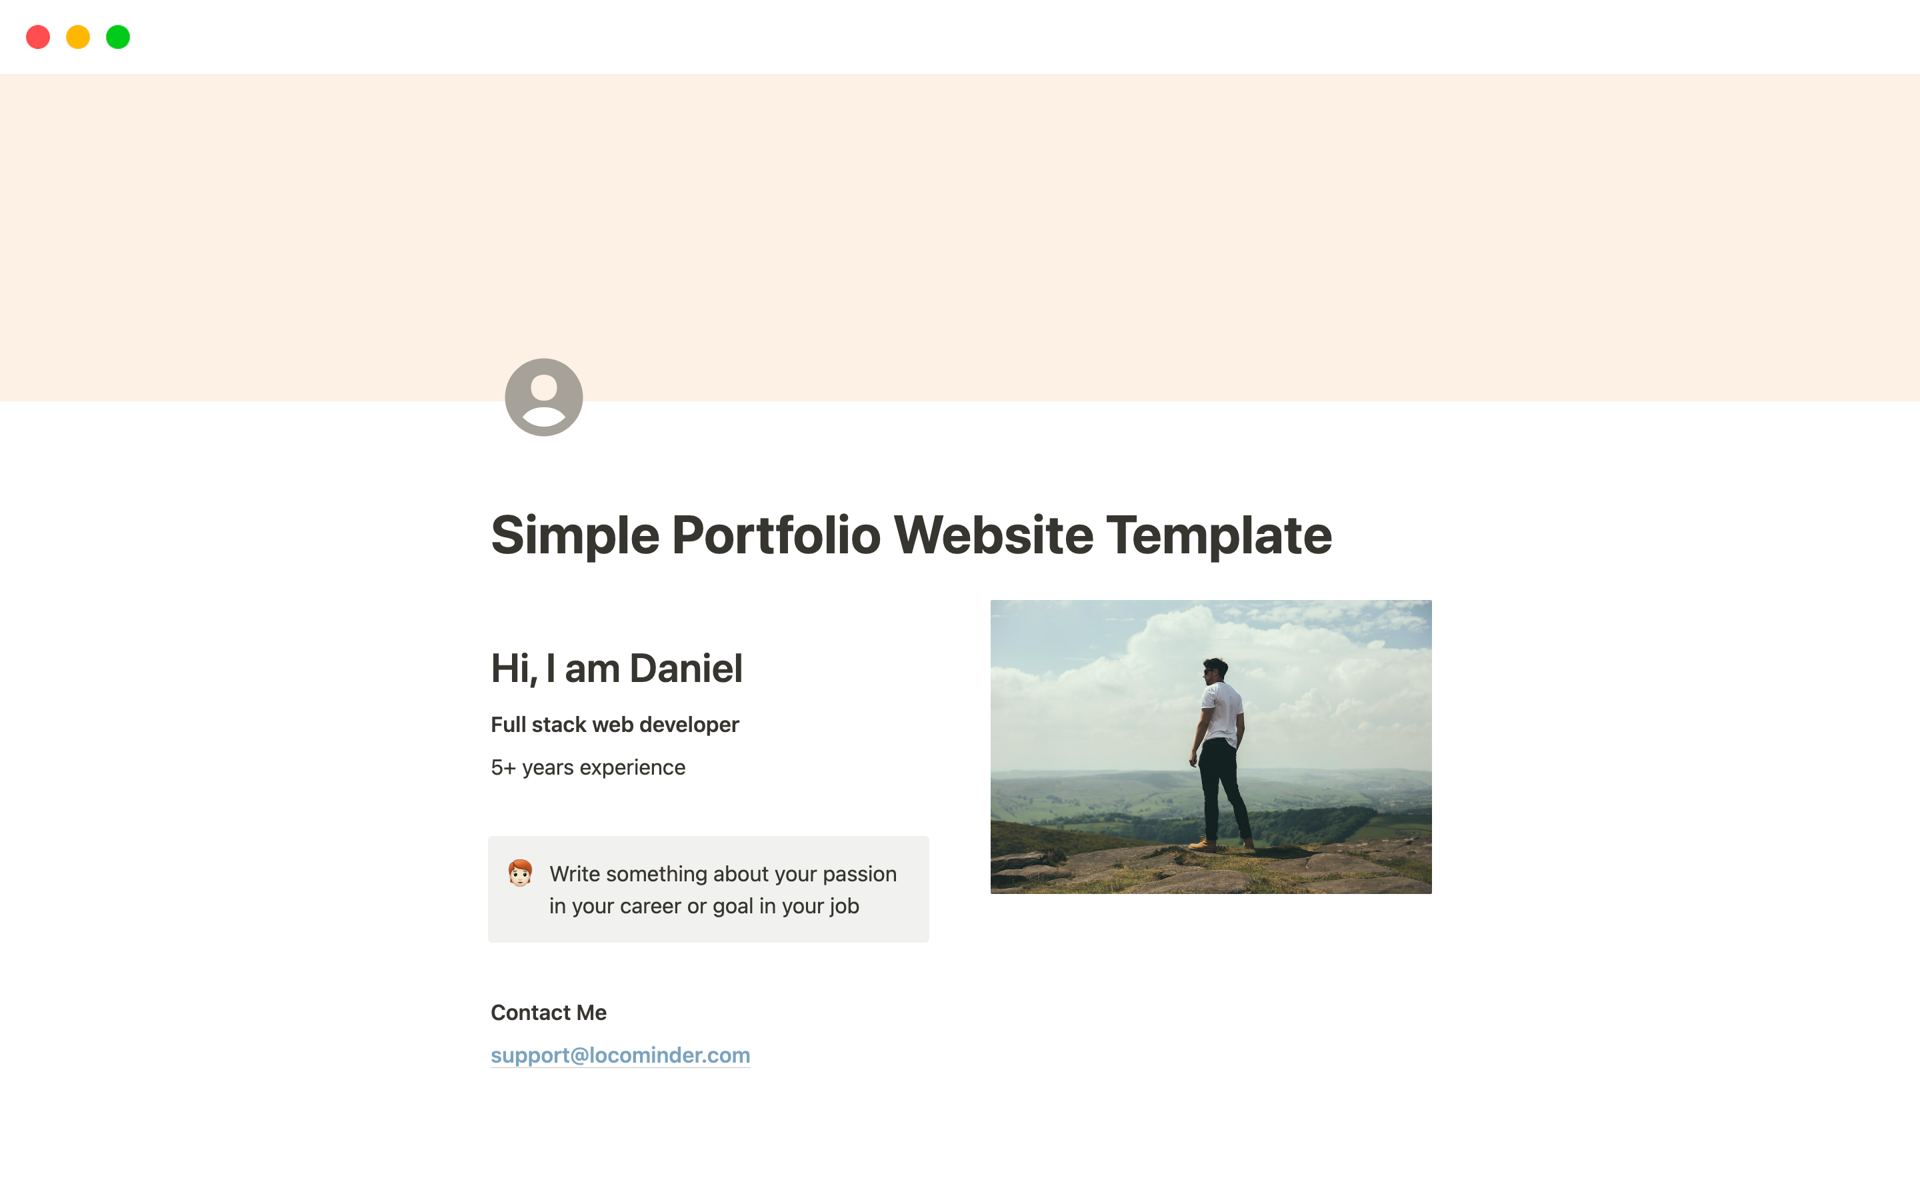 Aperçu du modèle de Simple Portfolio Website